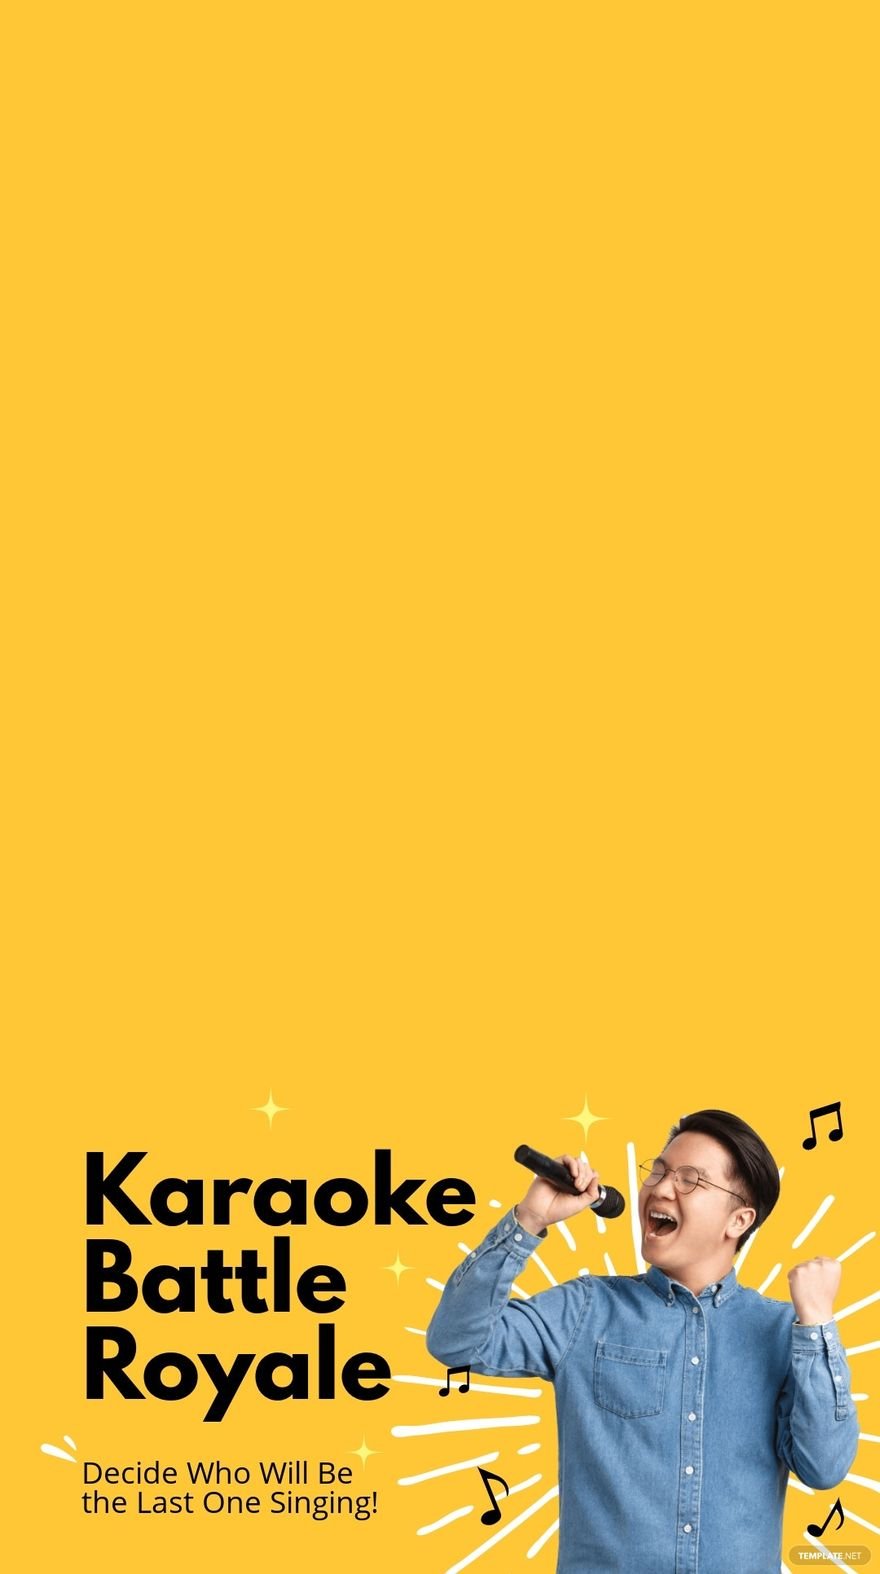 Karaoke Battle Snapchat Geofilter Template